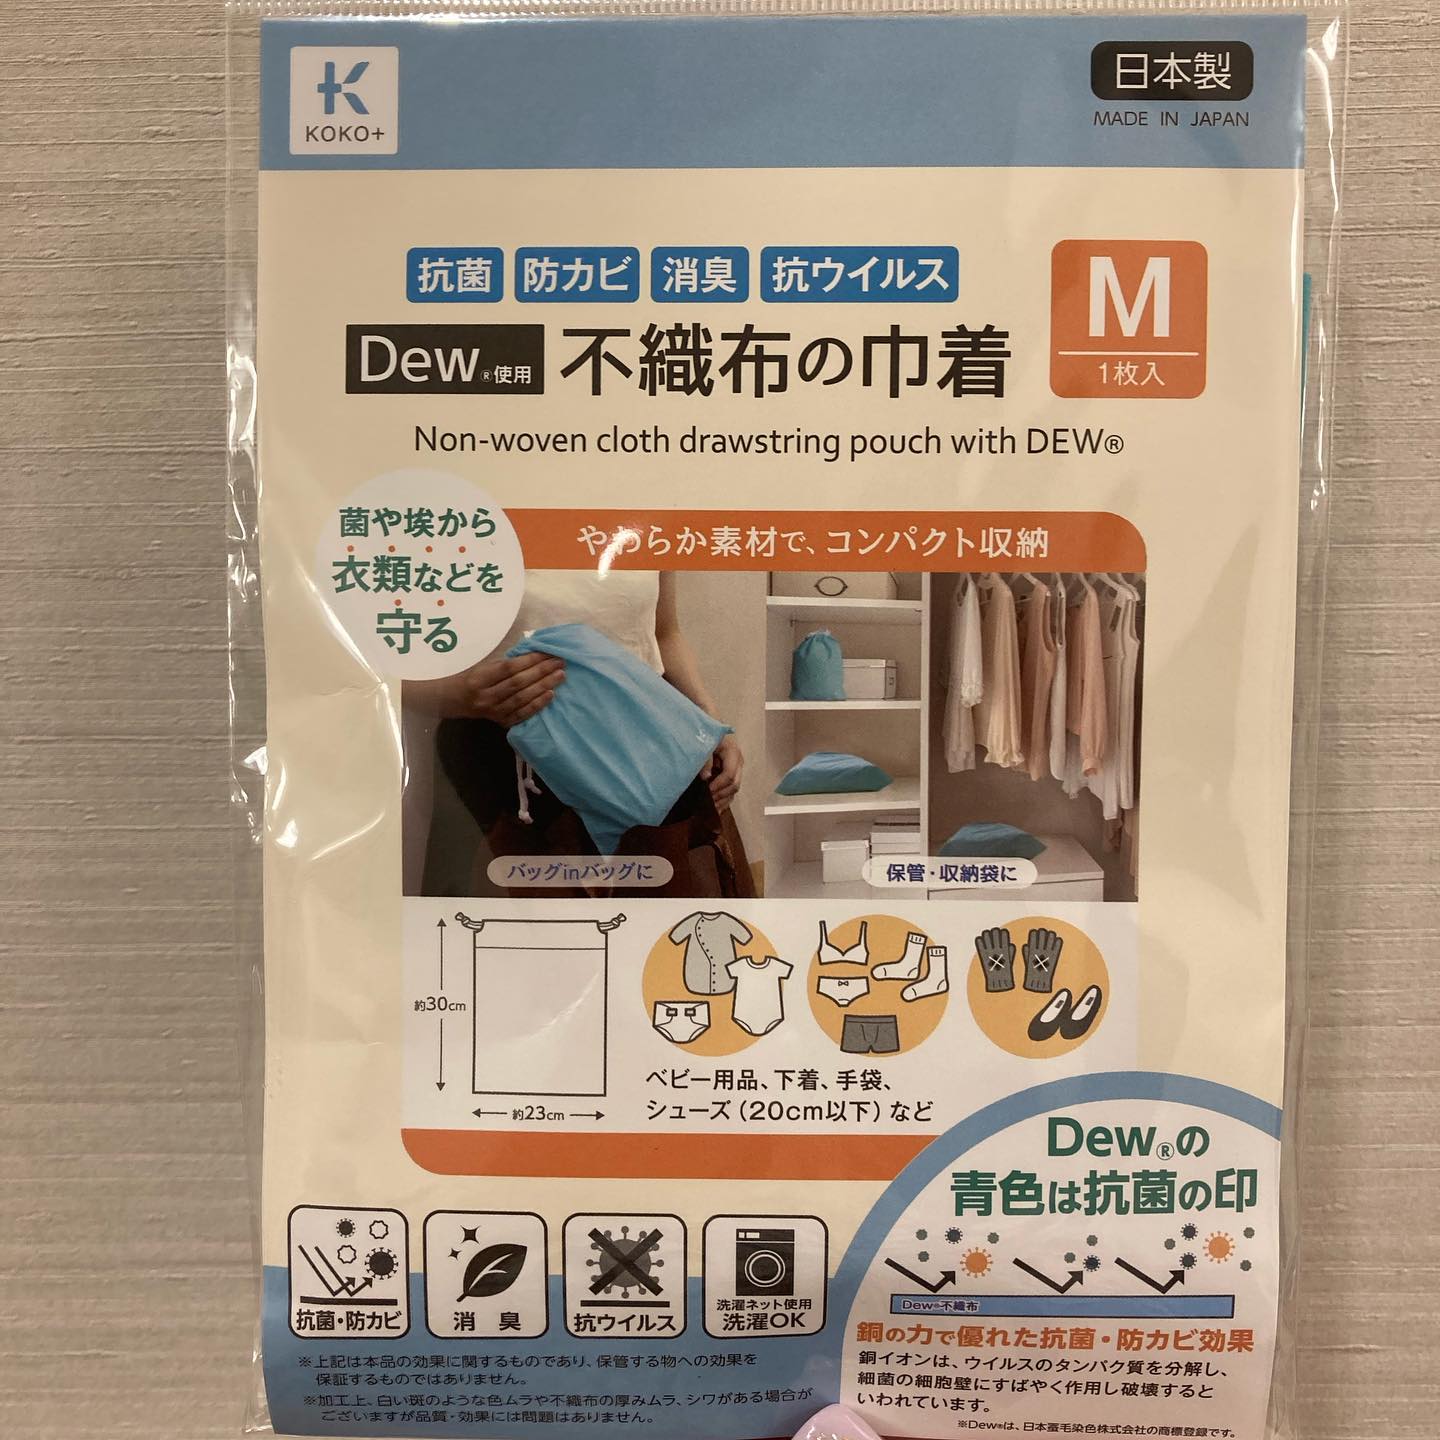 口コミ投稿：株式会社KAWAGUCHI様の、【Dew (R) 使用 不織布の巾着 M】を、使わせていただいた。…